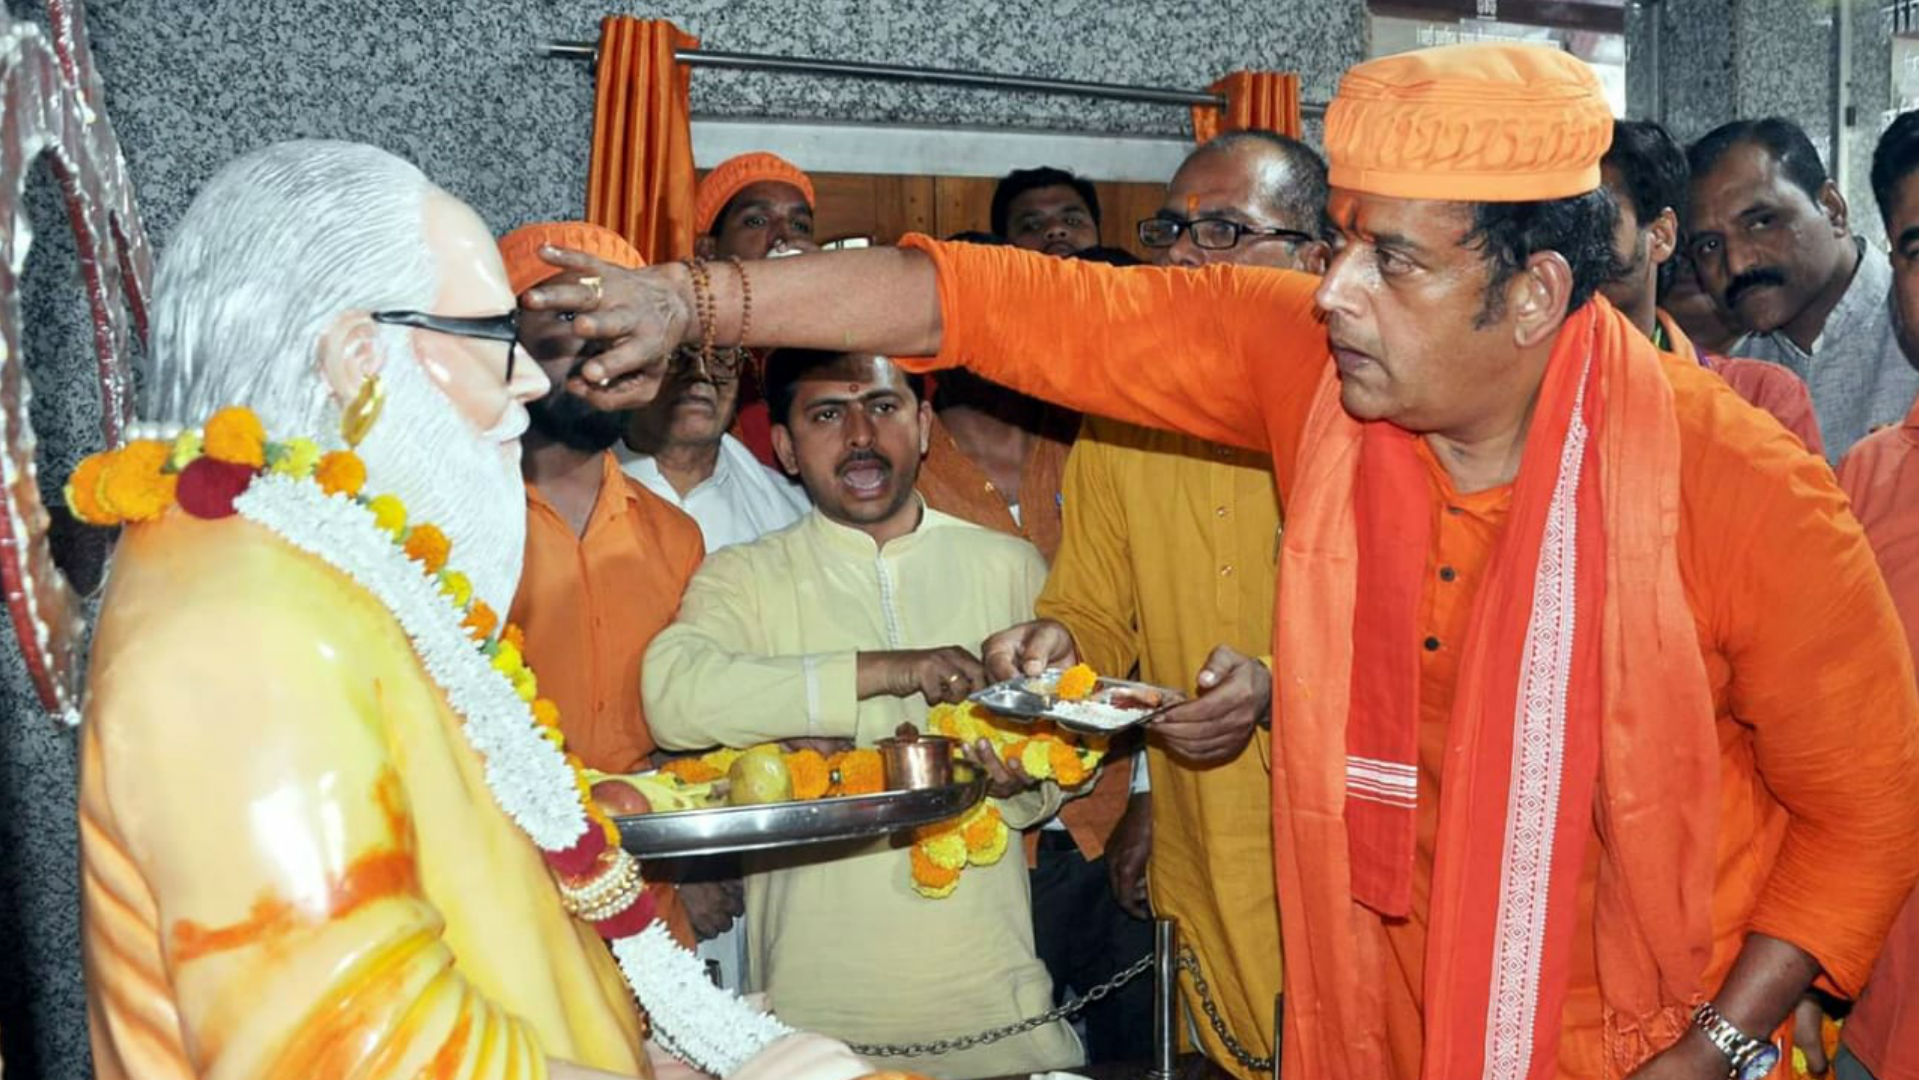 रवि किशन ने गुरु गोरखनाथ का आशीर्वाद लेकर शुरू किया चुनावी प्रचार, बोले- योगी की खड़ाऊं रख जनता की सेवा करूंगा